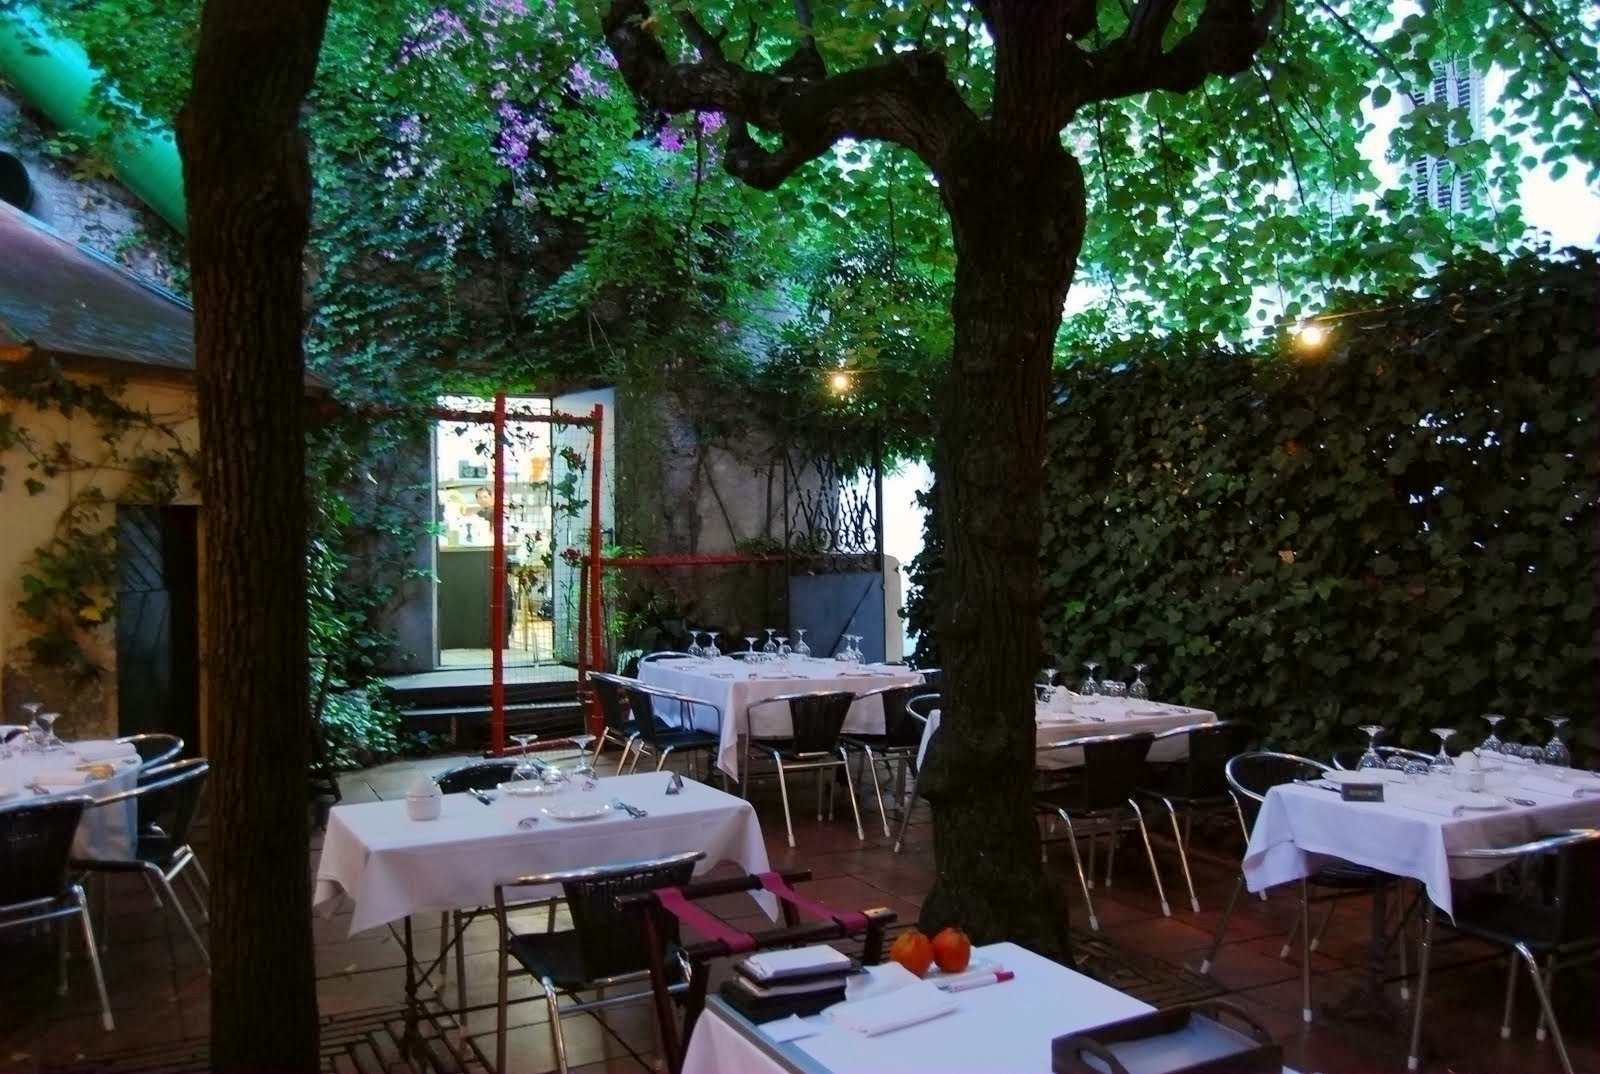 Al barri de Sarrià el restaurant amb millor valoració ens ofereix un menjador al mig d'un jardí